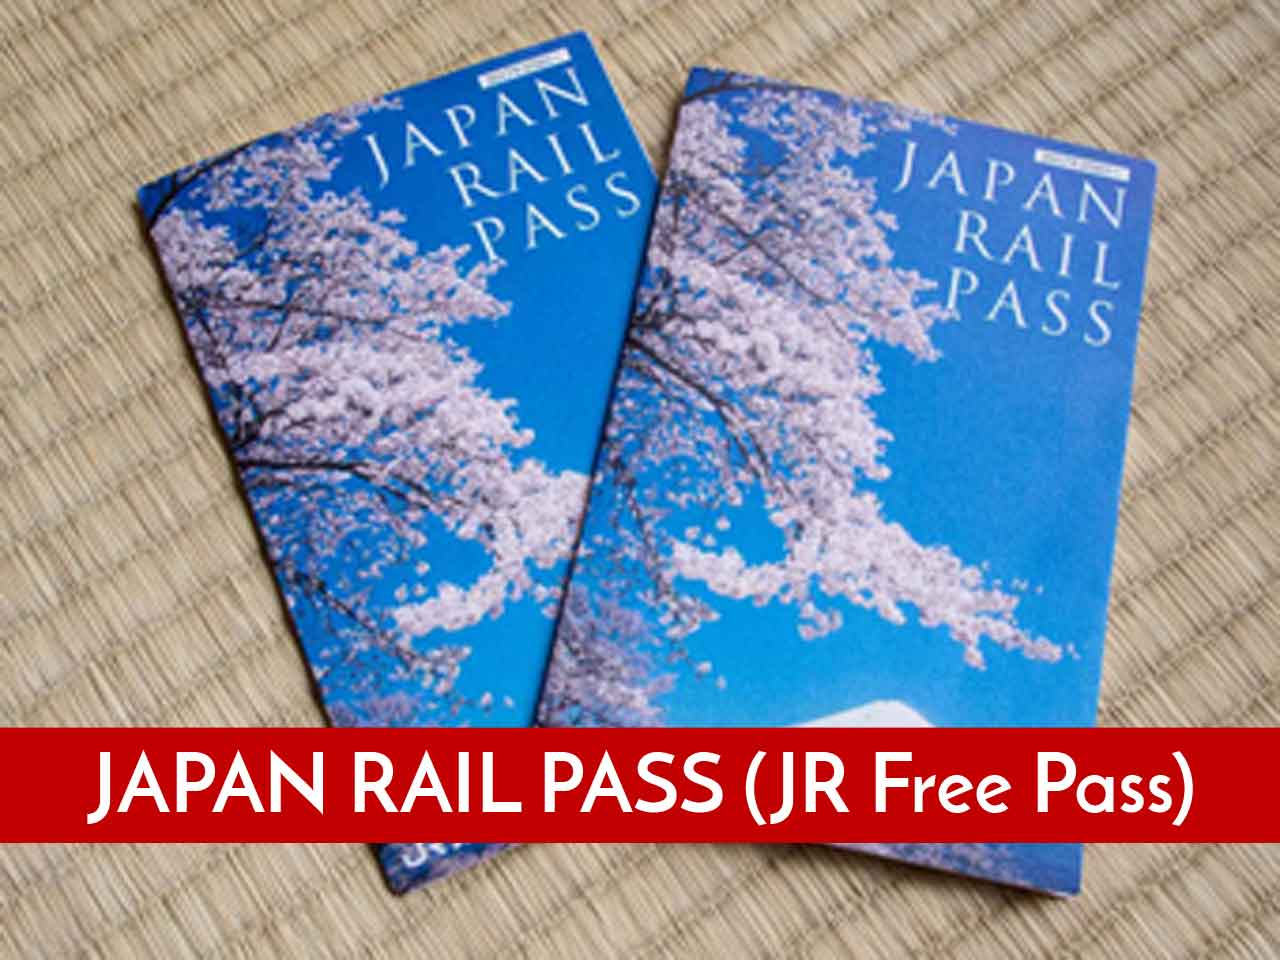 Informasi Detail Japan Rail Pass (JR Free Pass)